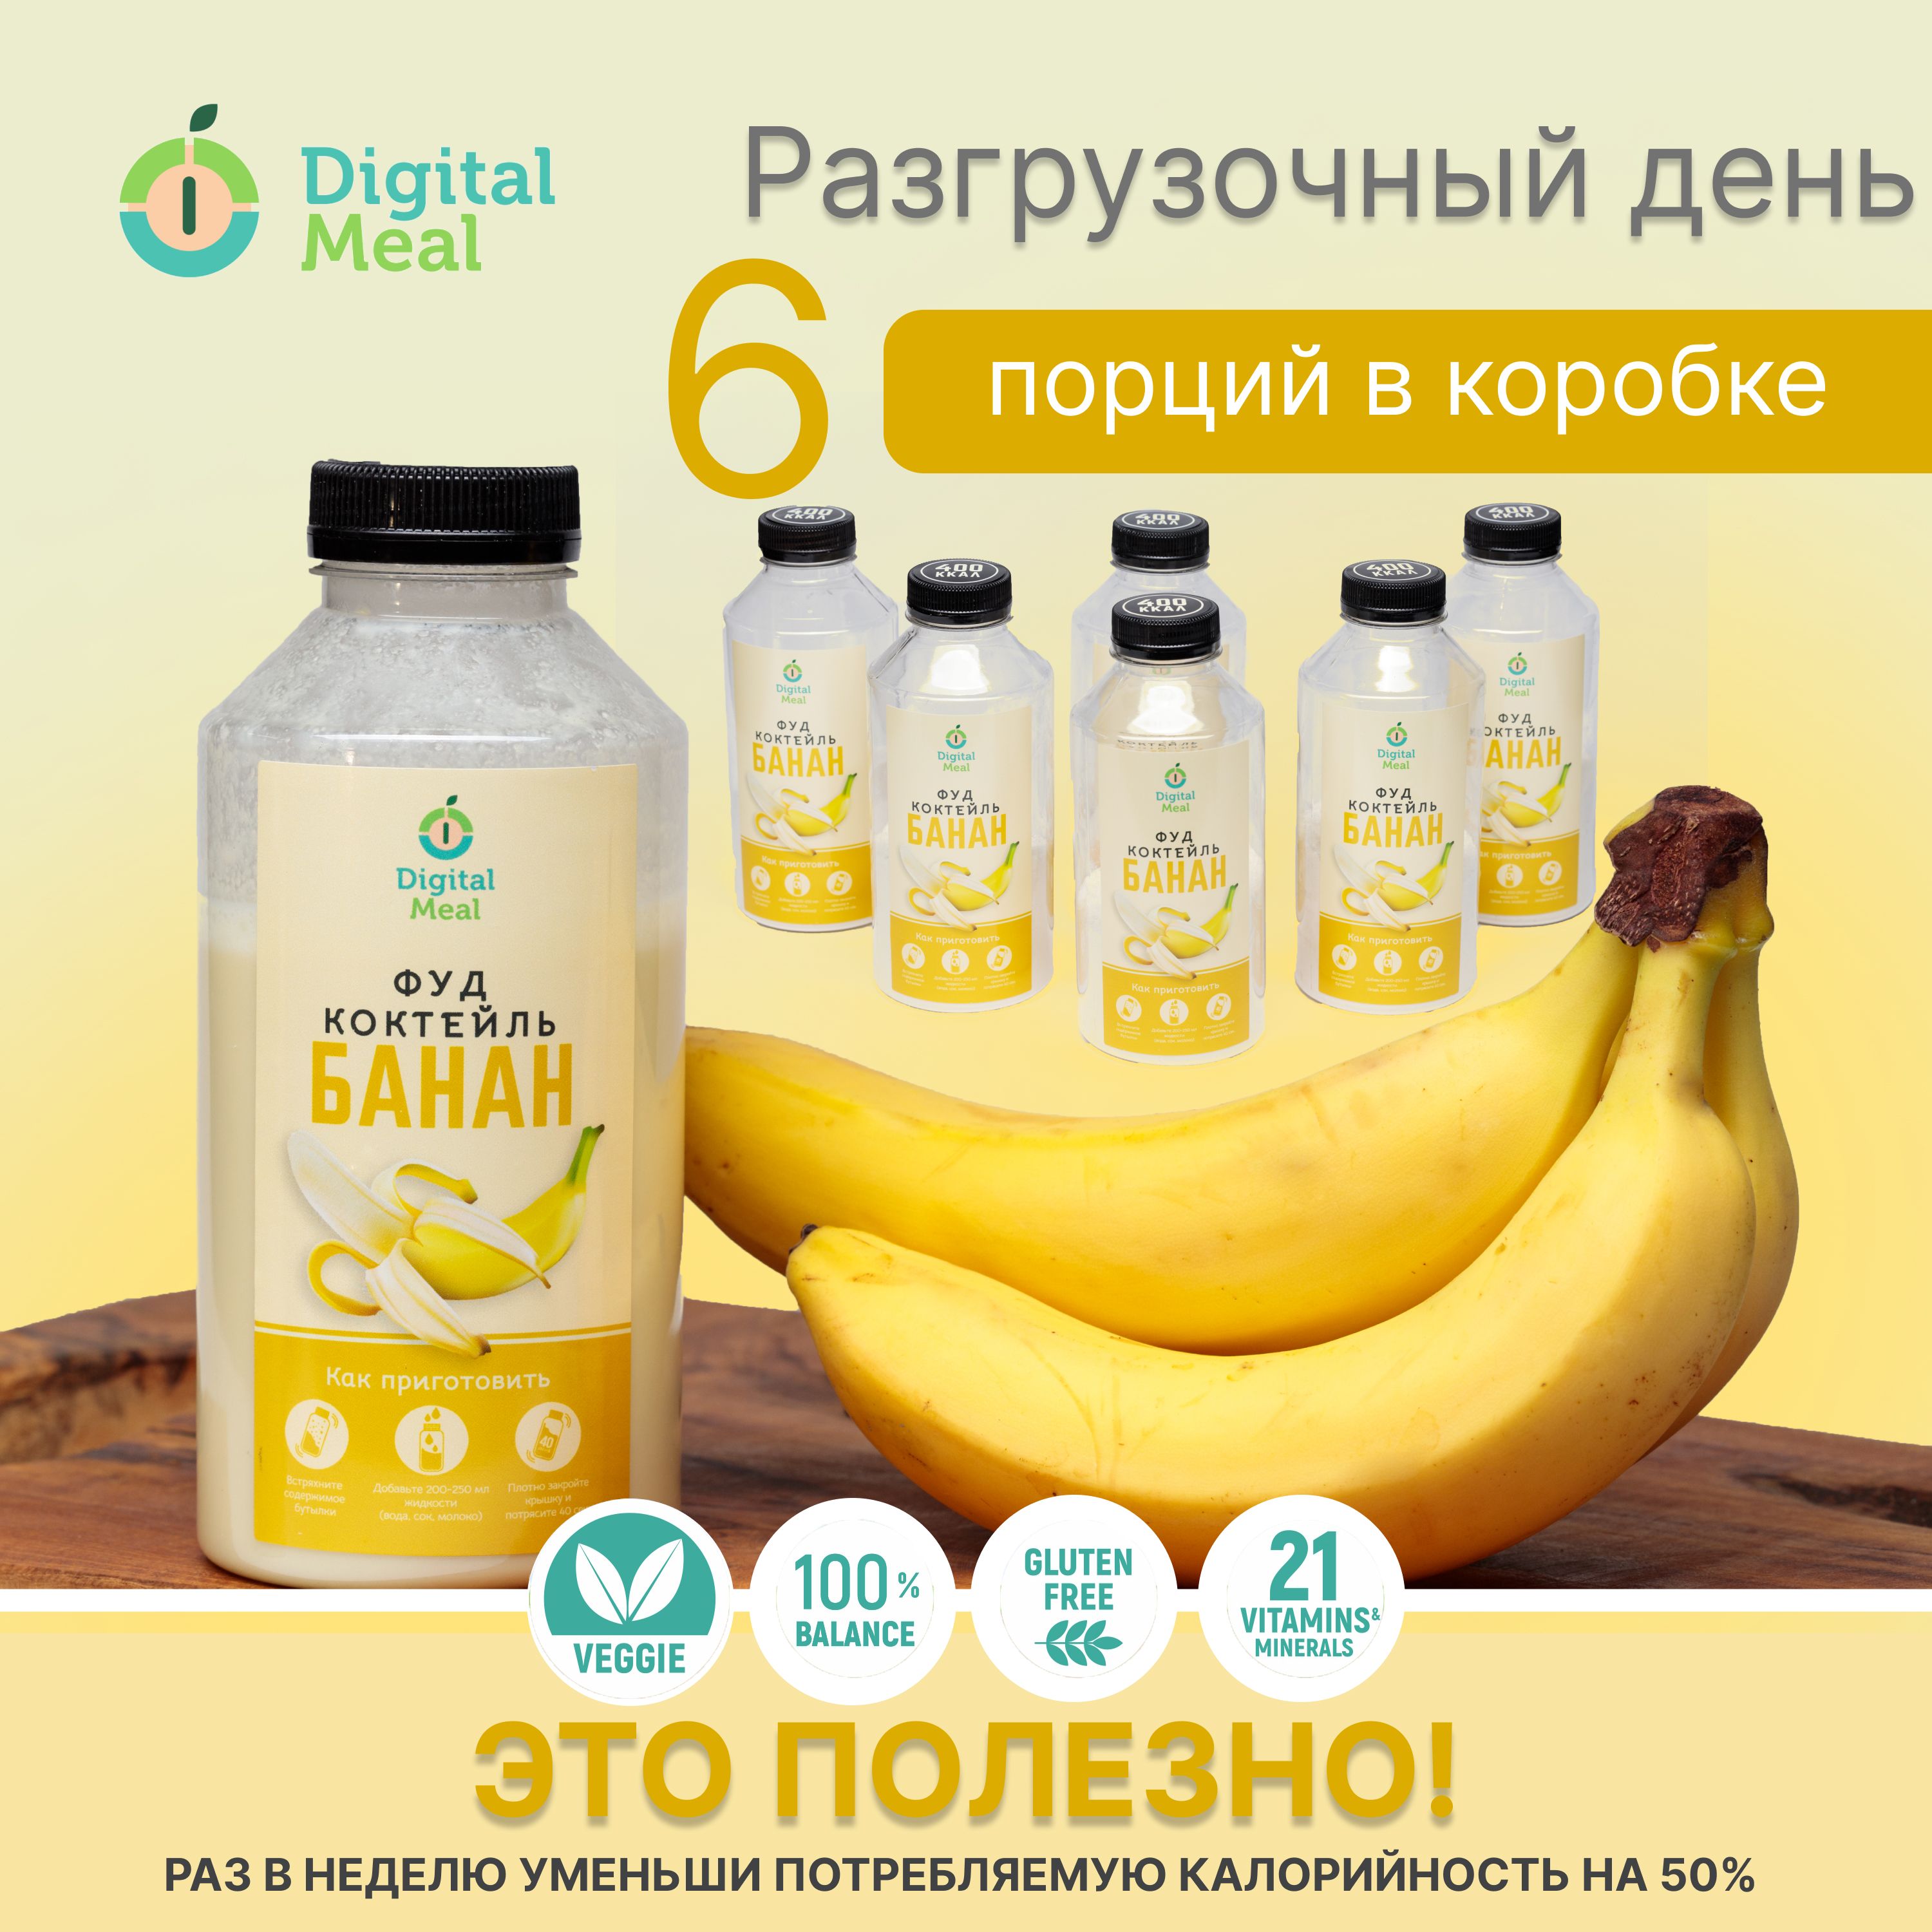 Коктейль Digital Meal заменитель еды для похудения банан, 6 шт по 0,5 мл